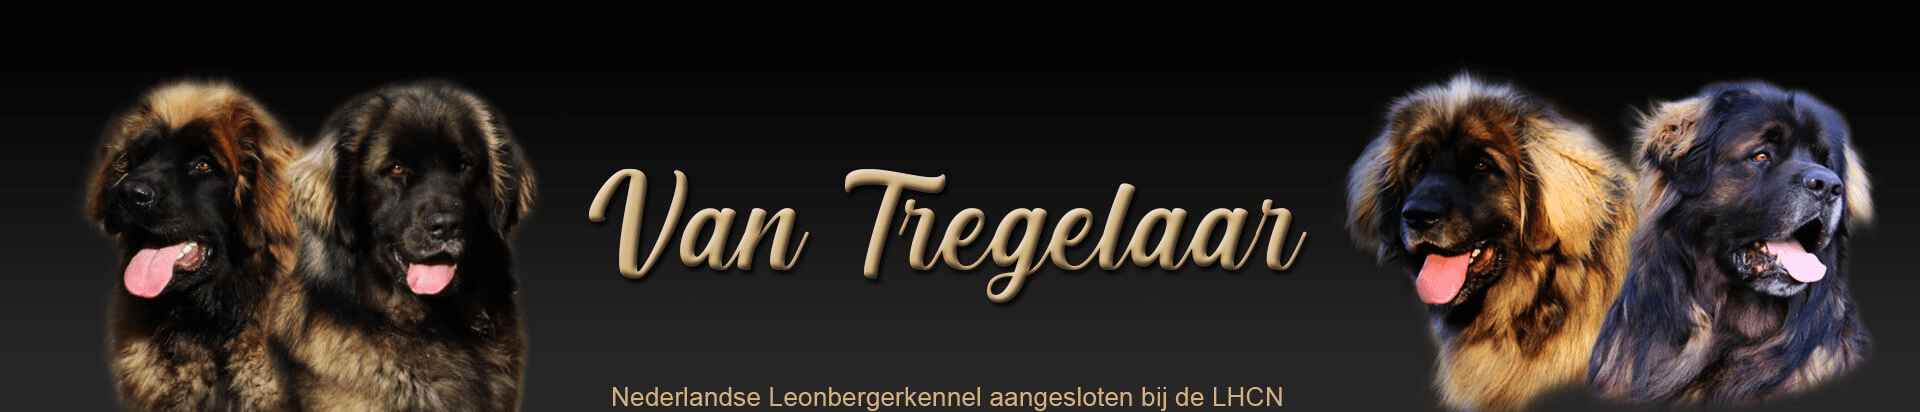 Van Tregelaar